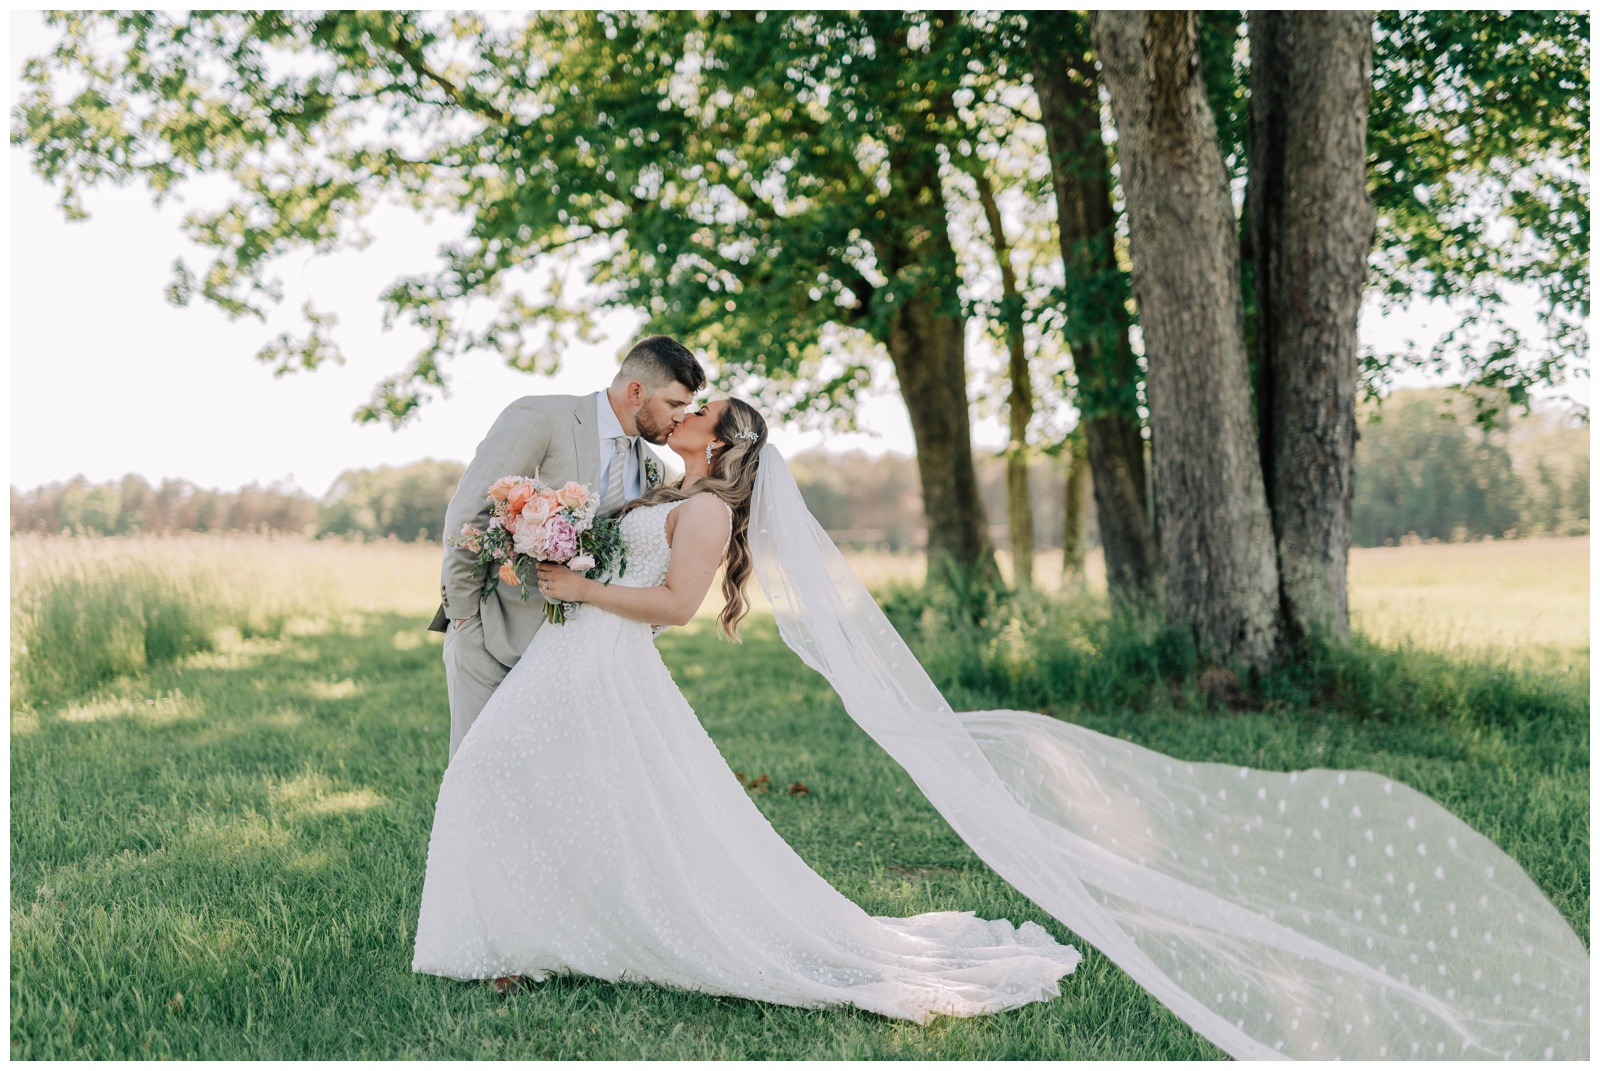 Hannah Bryerton Photography,Pennsylvania Weddings,Tuckd Inn Farm Events,